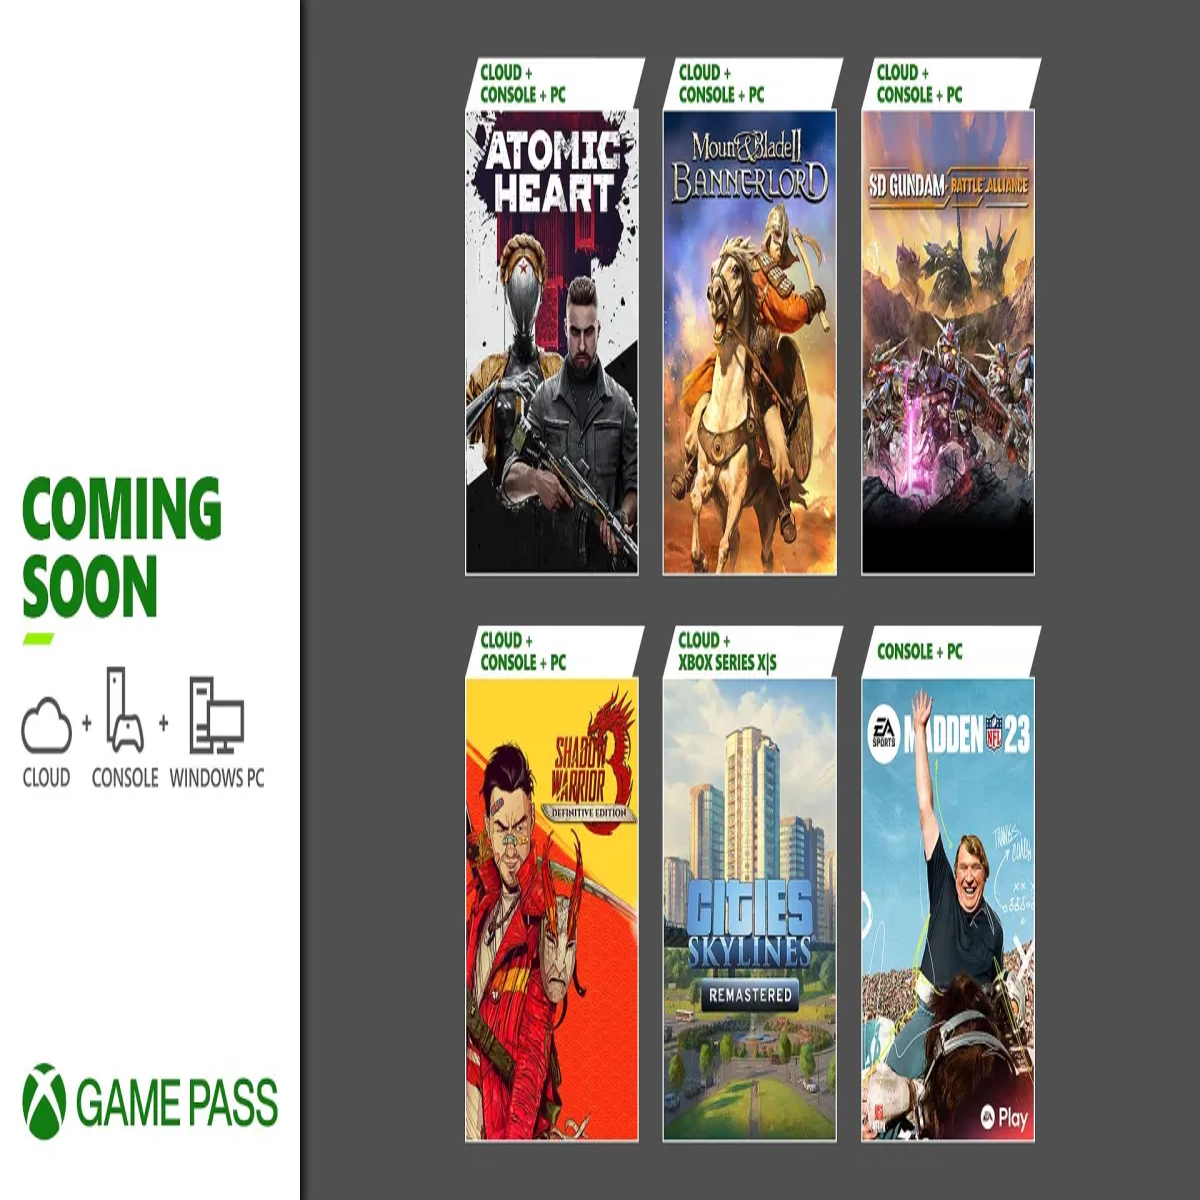 Xbox Game Pass: quais jogos entram e saem em fevereiro de 2023